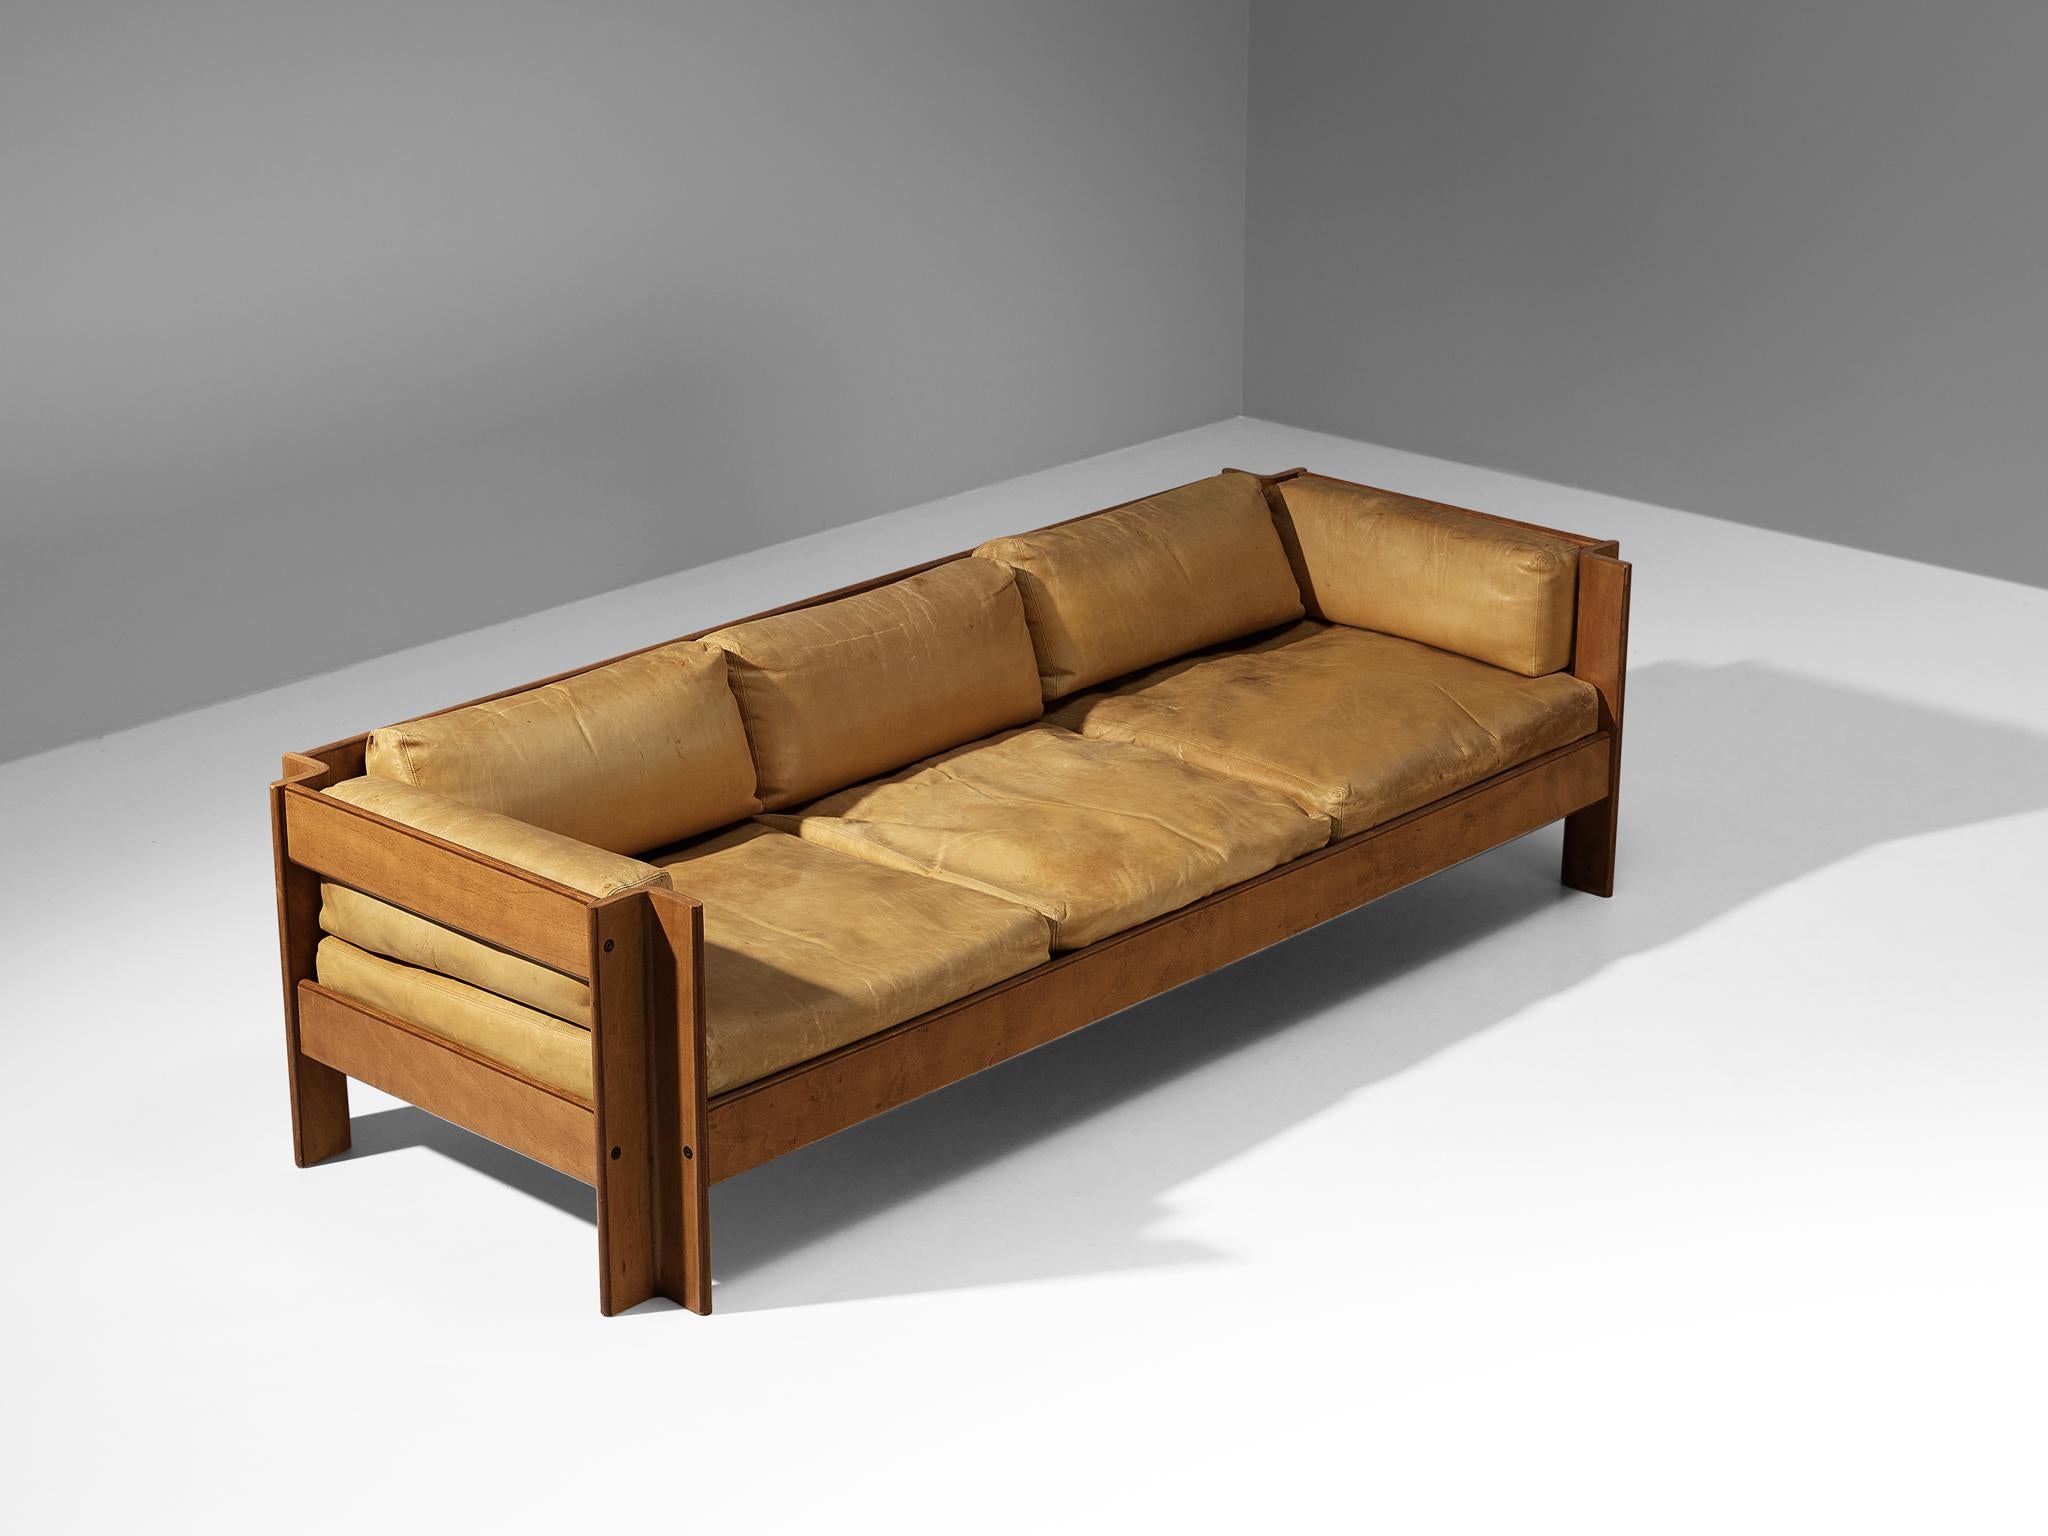 Sergio Asti pour Poltronova, canapé modèle 'Zelda', cuir, noyer, laiton, Italie, 1962. 

Ce canapé bien conçu est doté d'un cadre sculptural en bois composé d'angles découpés qui contribuent à l'aspect architectural du canapé. Le design a une